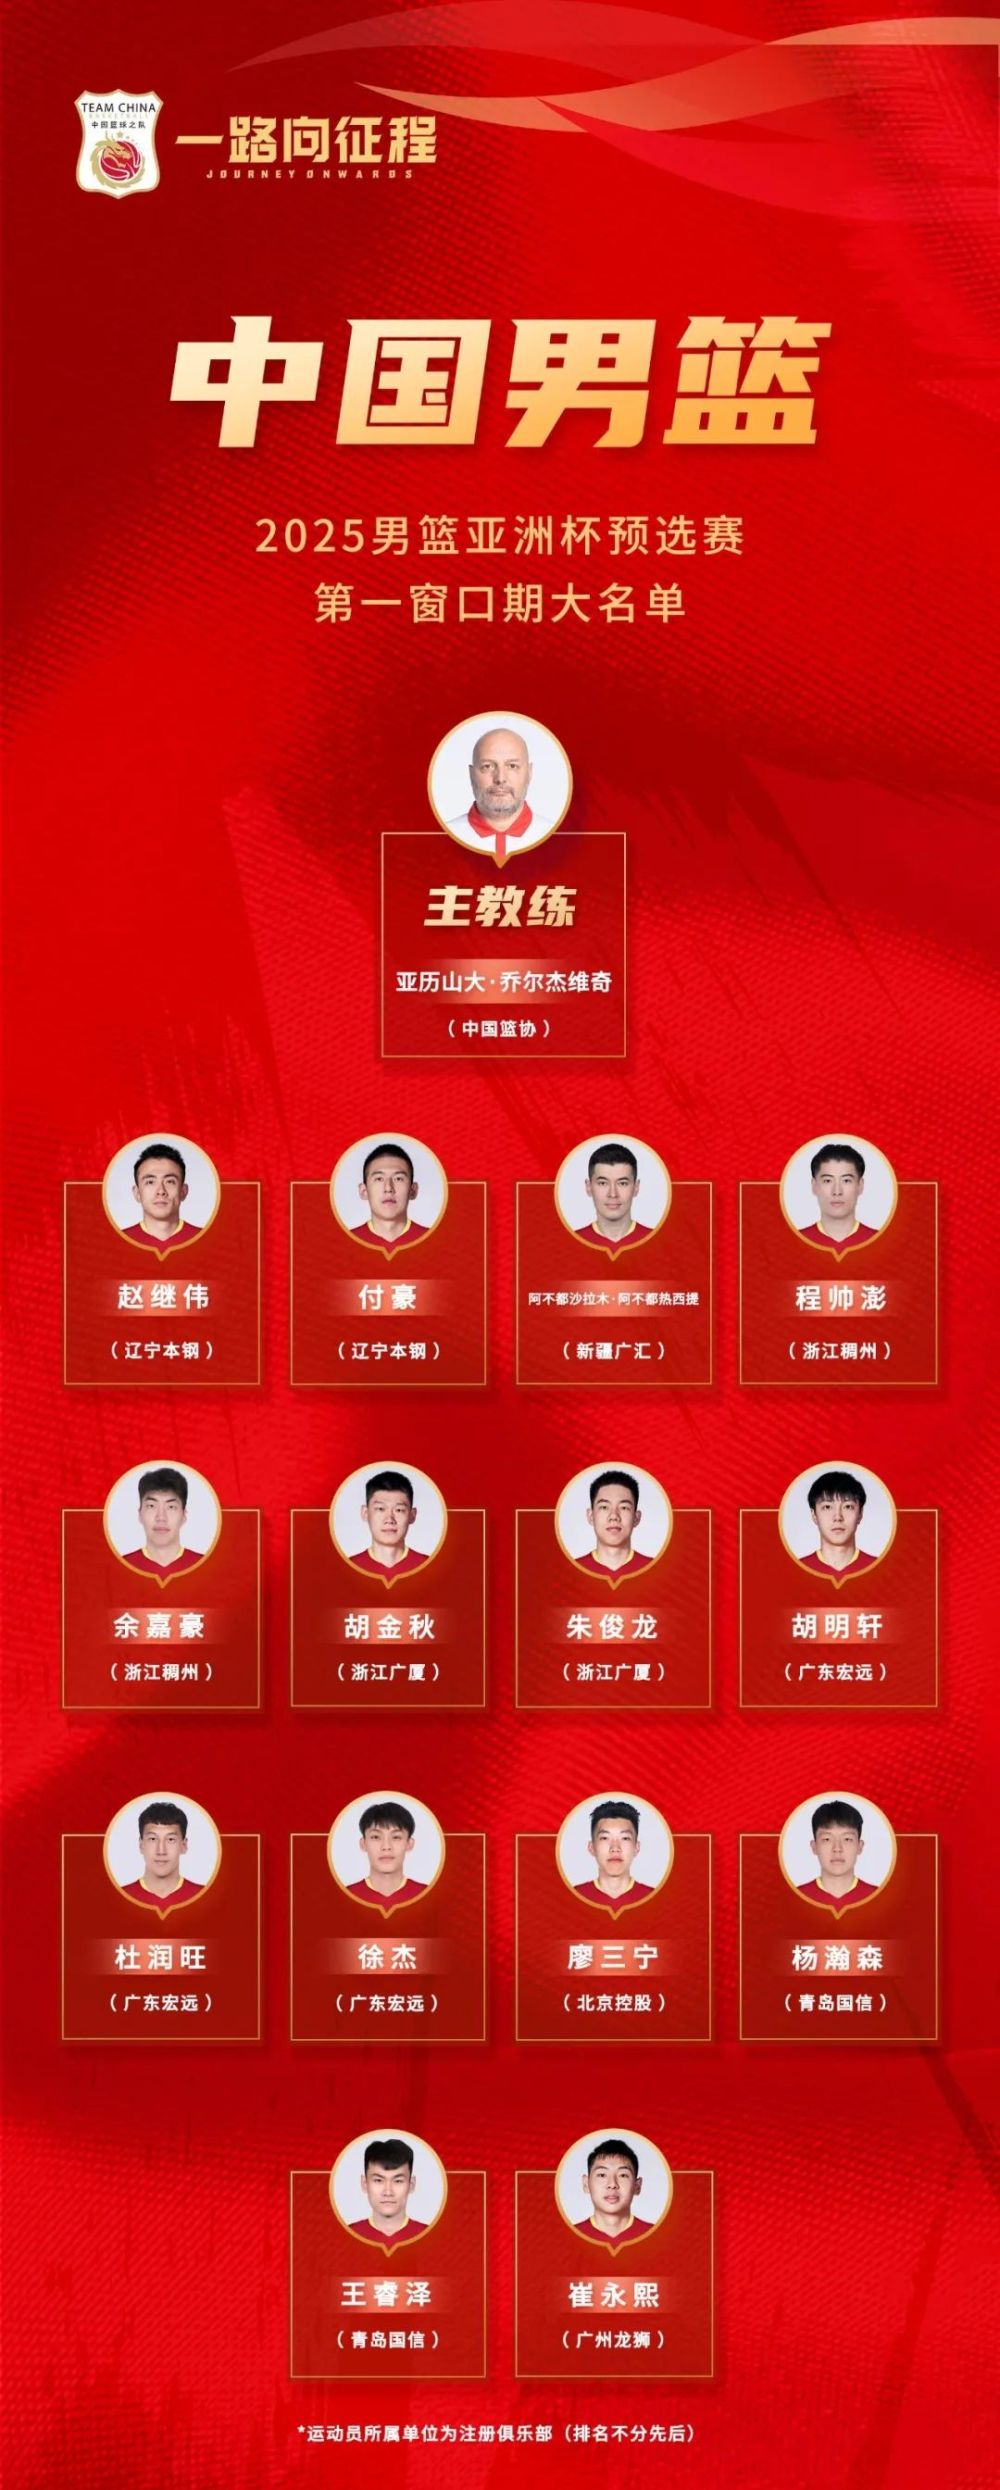 中国男篮公布亚洲杯预选赛参赛名单